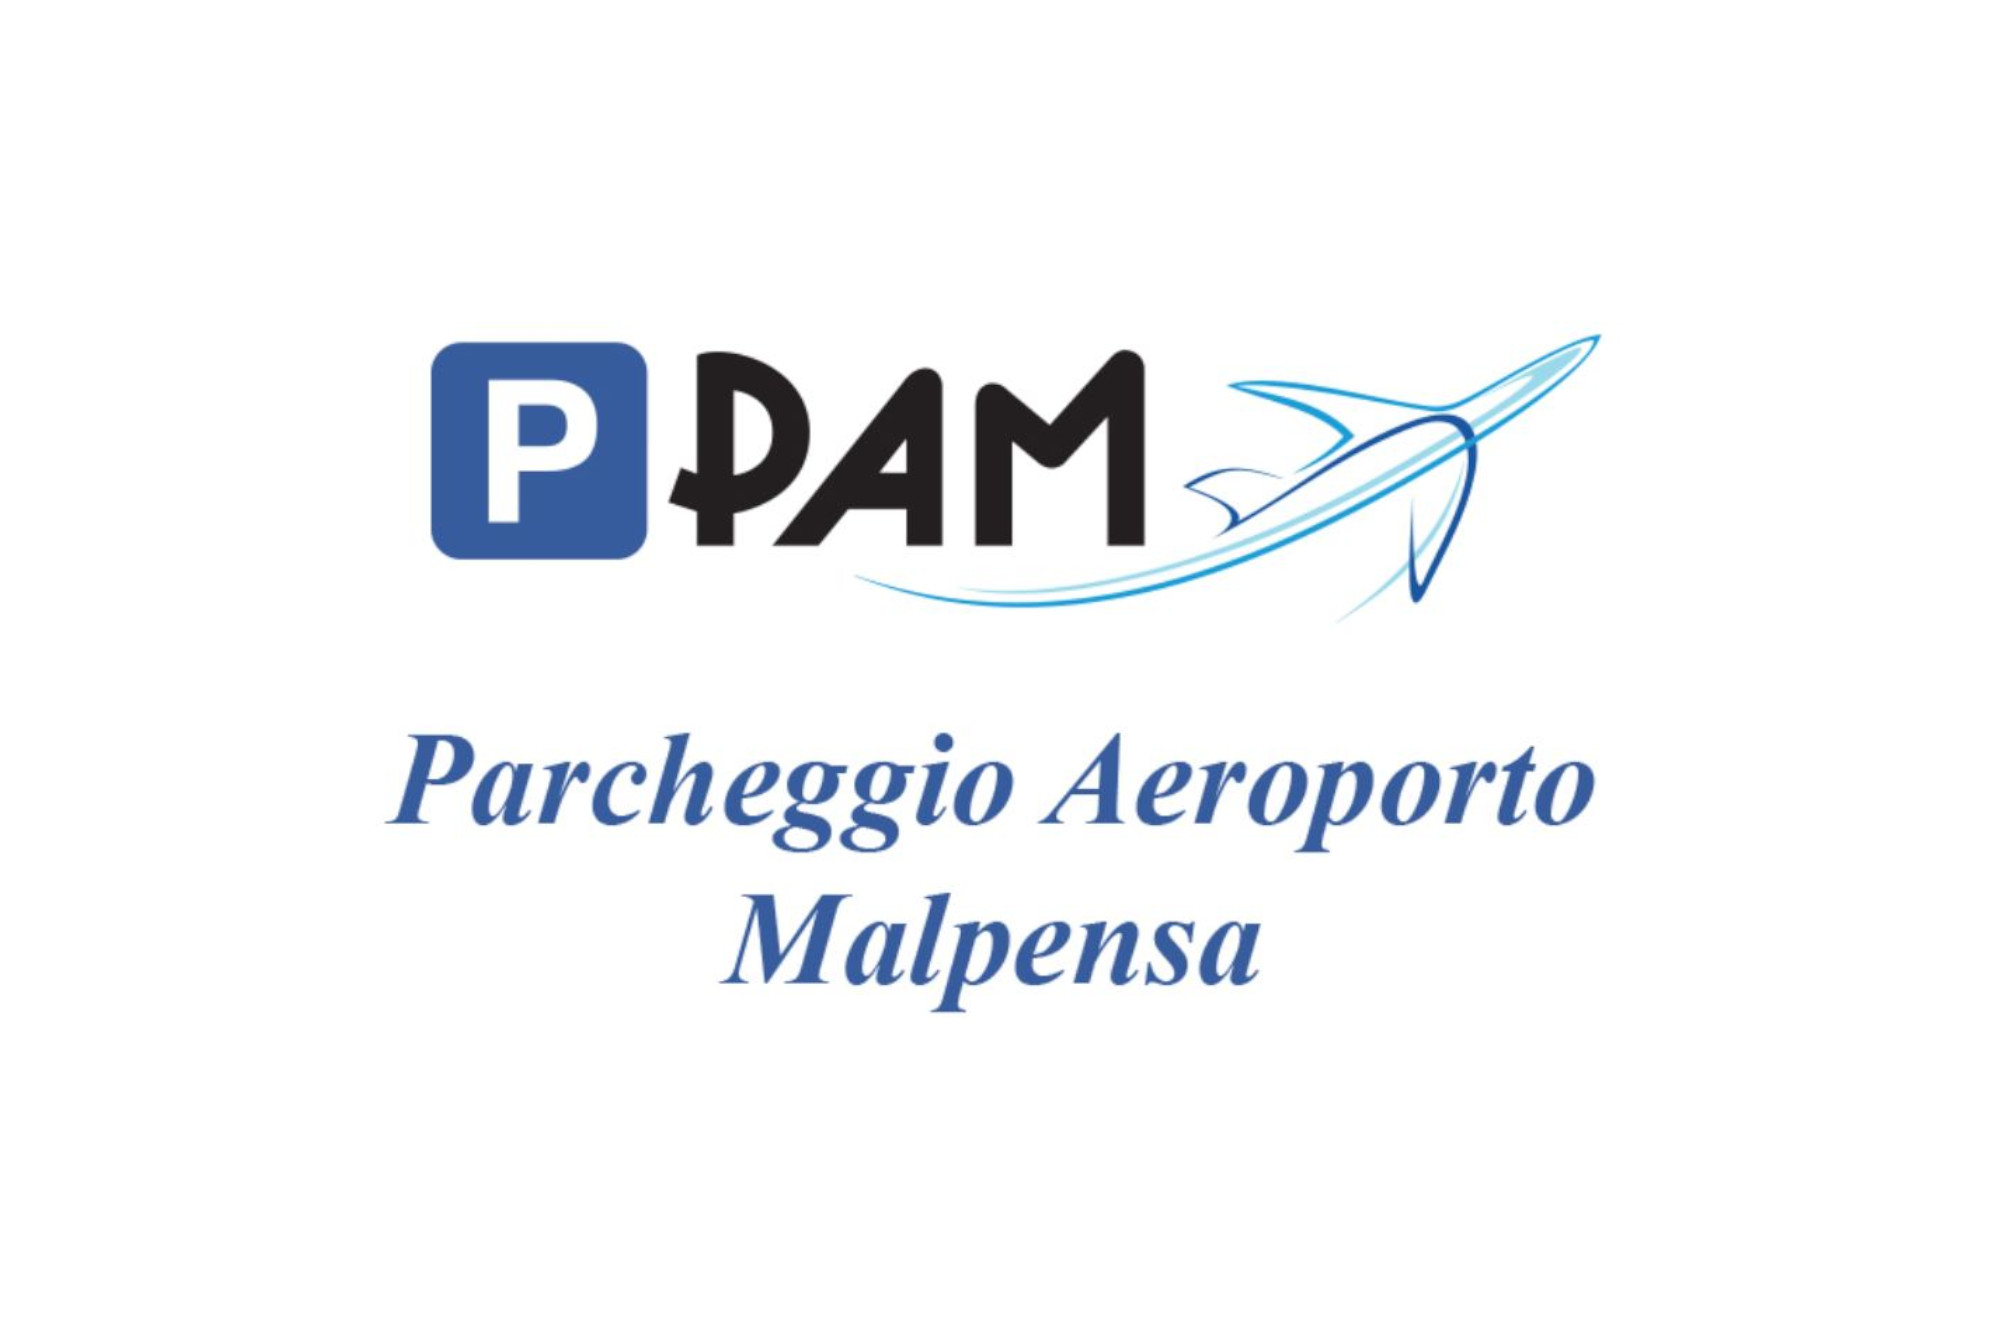 PAM Parcheggio Aeroporto Malpensa (Paga online) - Parcheggio Malpensa - picture 1